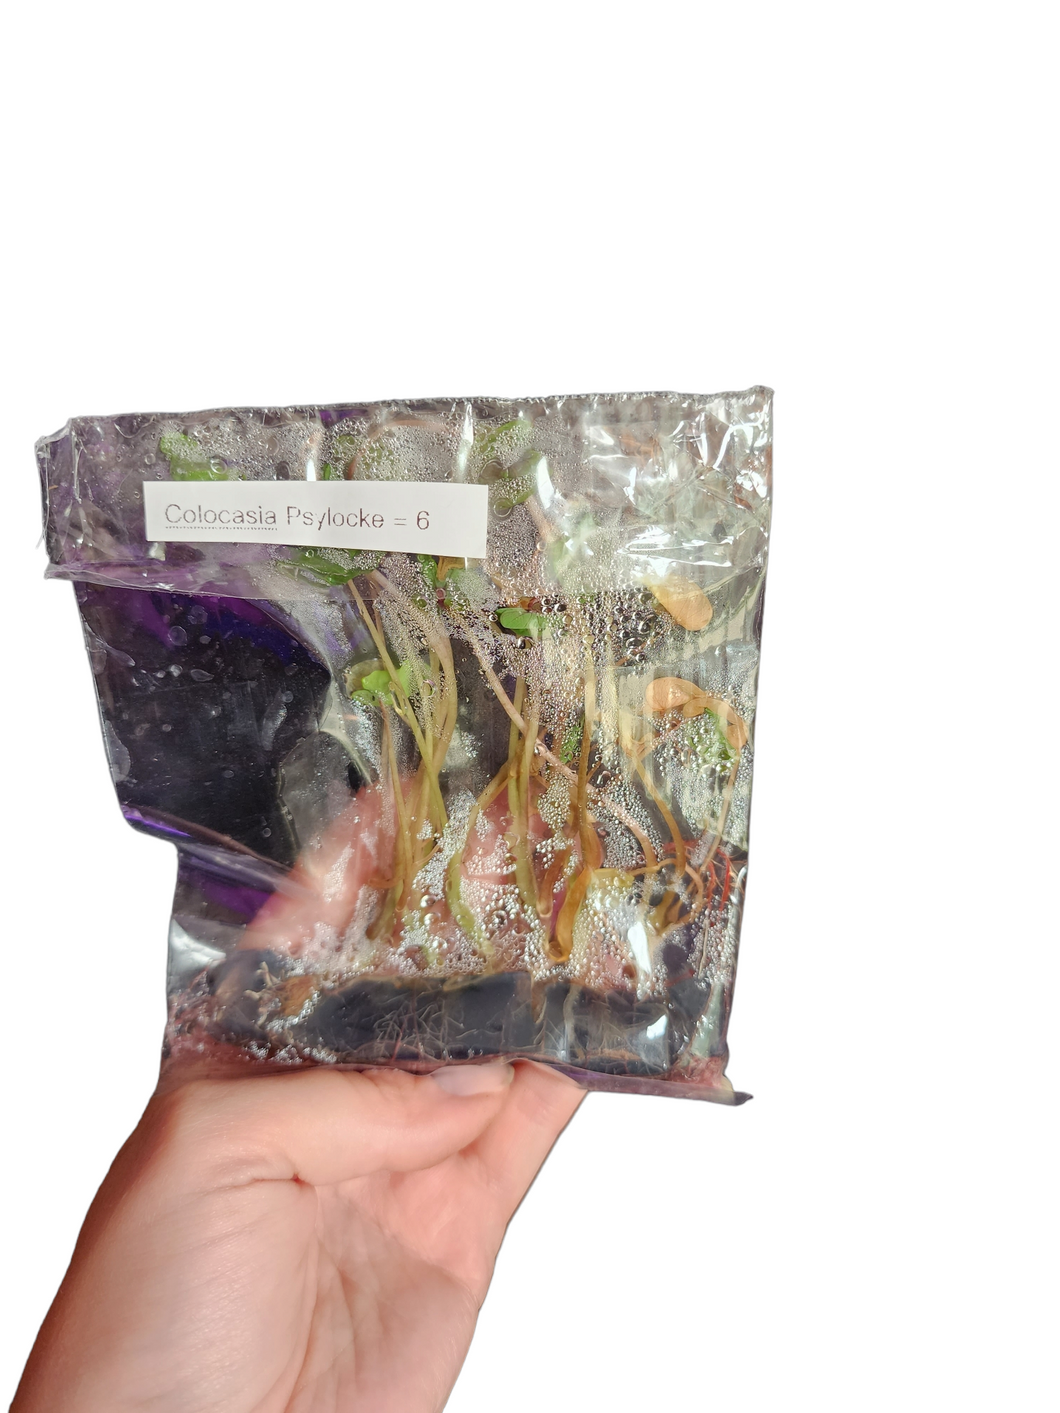 Colocasia Psylocke - Tissue Culture